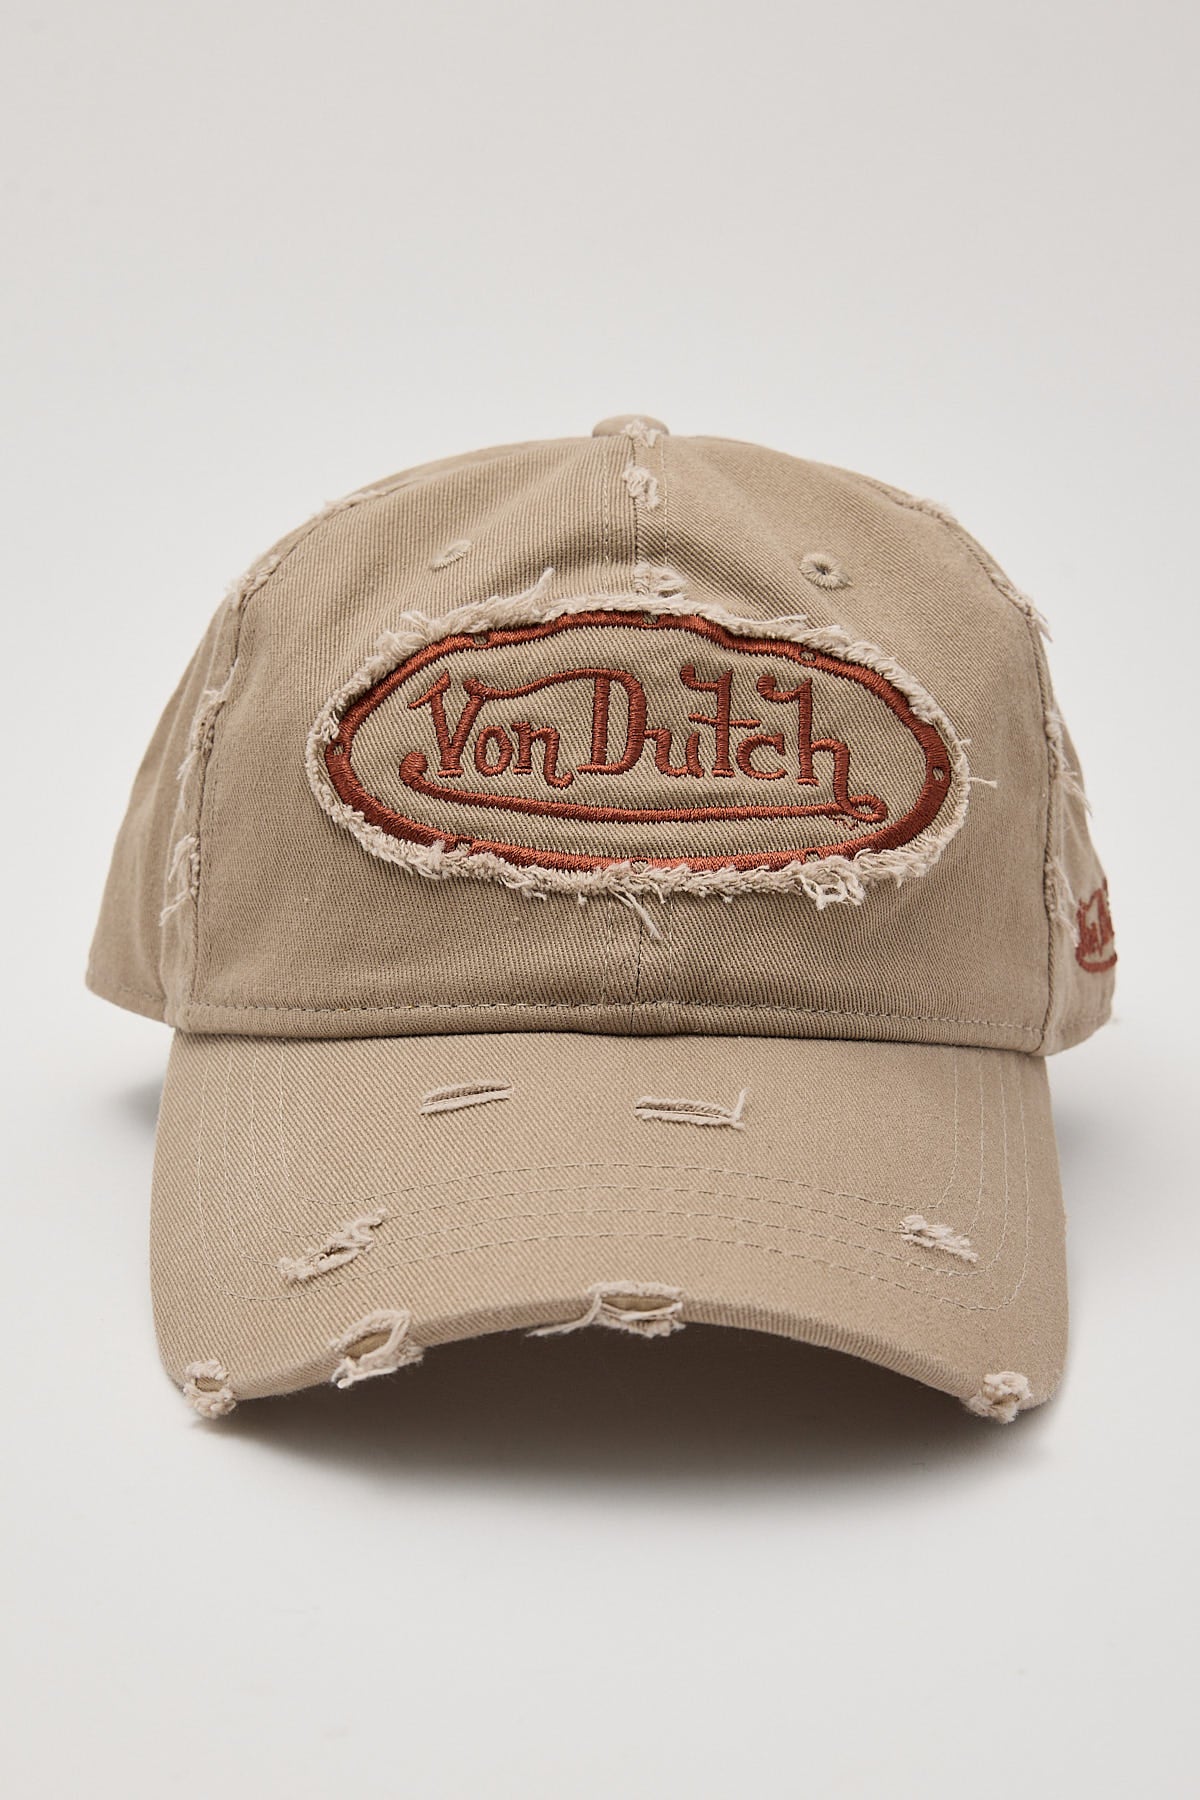 Von Dutch Distressed Dad Cap Washed Tan/Brown Patch